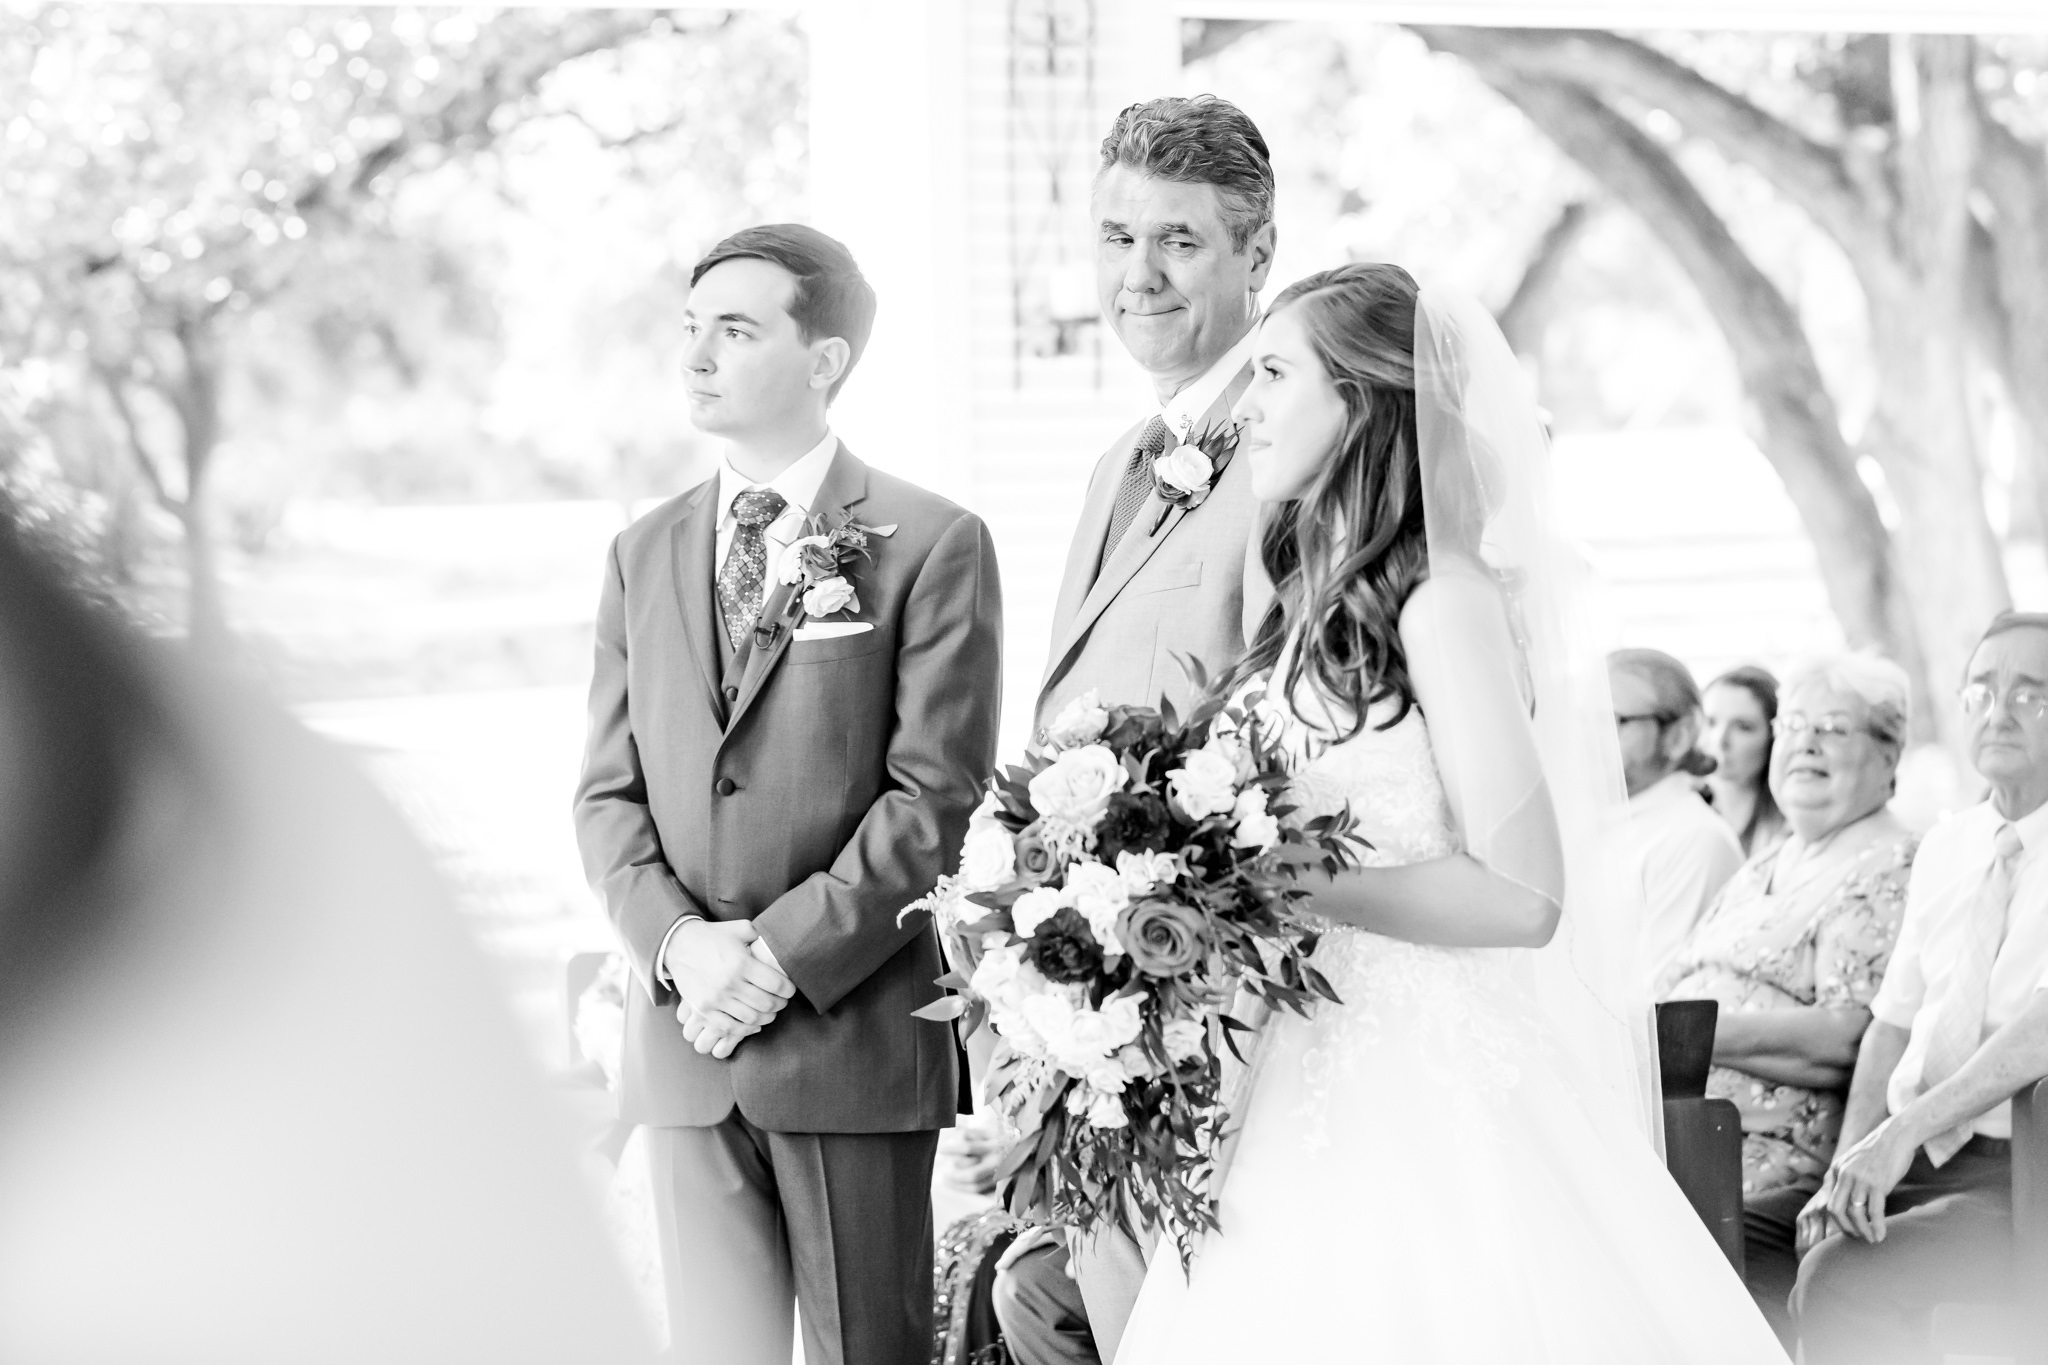 A Magenta & Blush Wedding at the Chandelier of Gruene in New Braunfels, TX by Dawn Elizabeth Studios, San Antonio Wedding Photographer